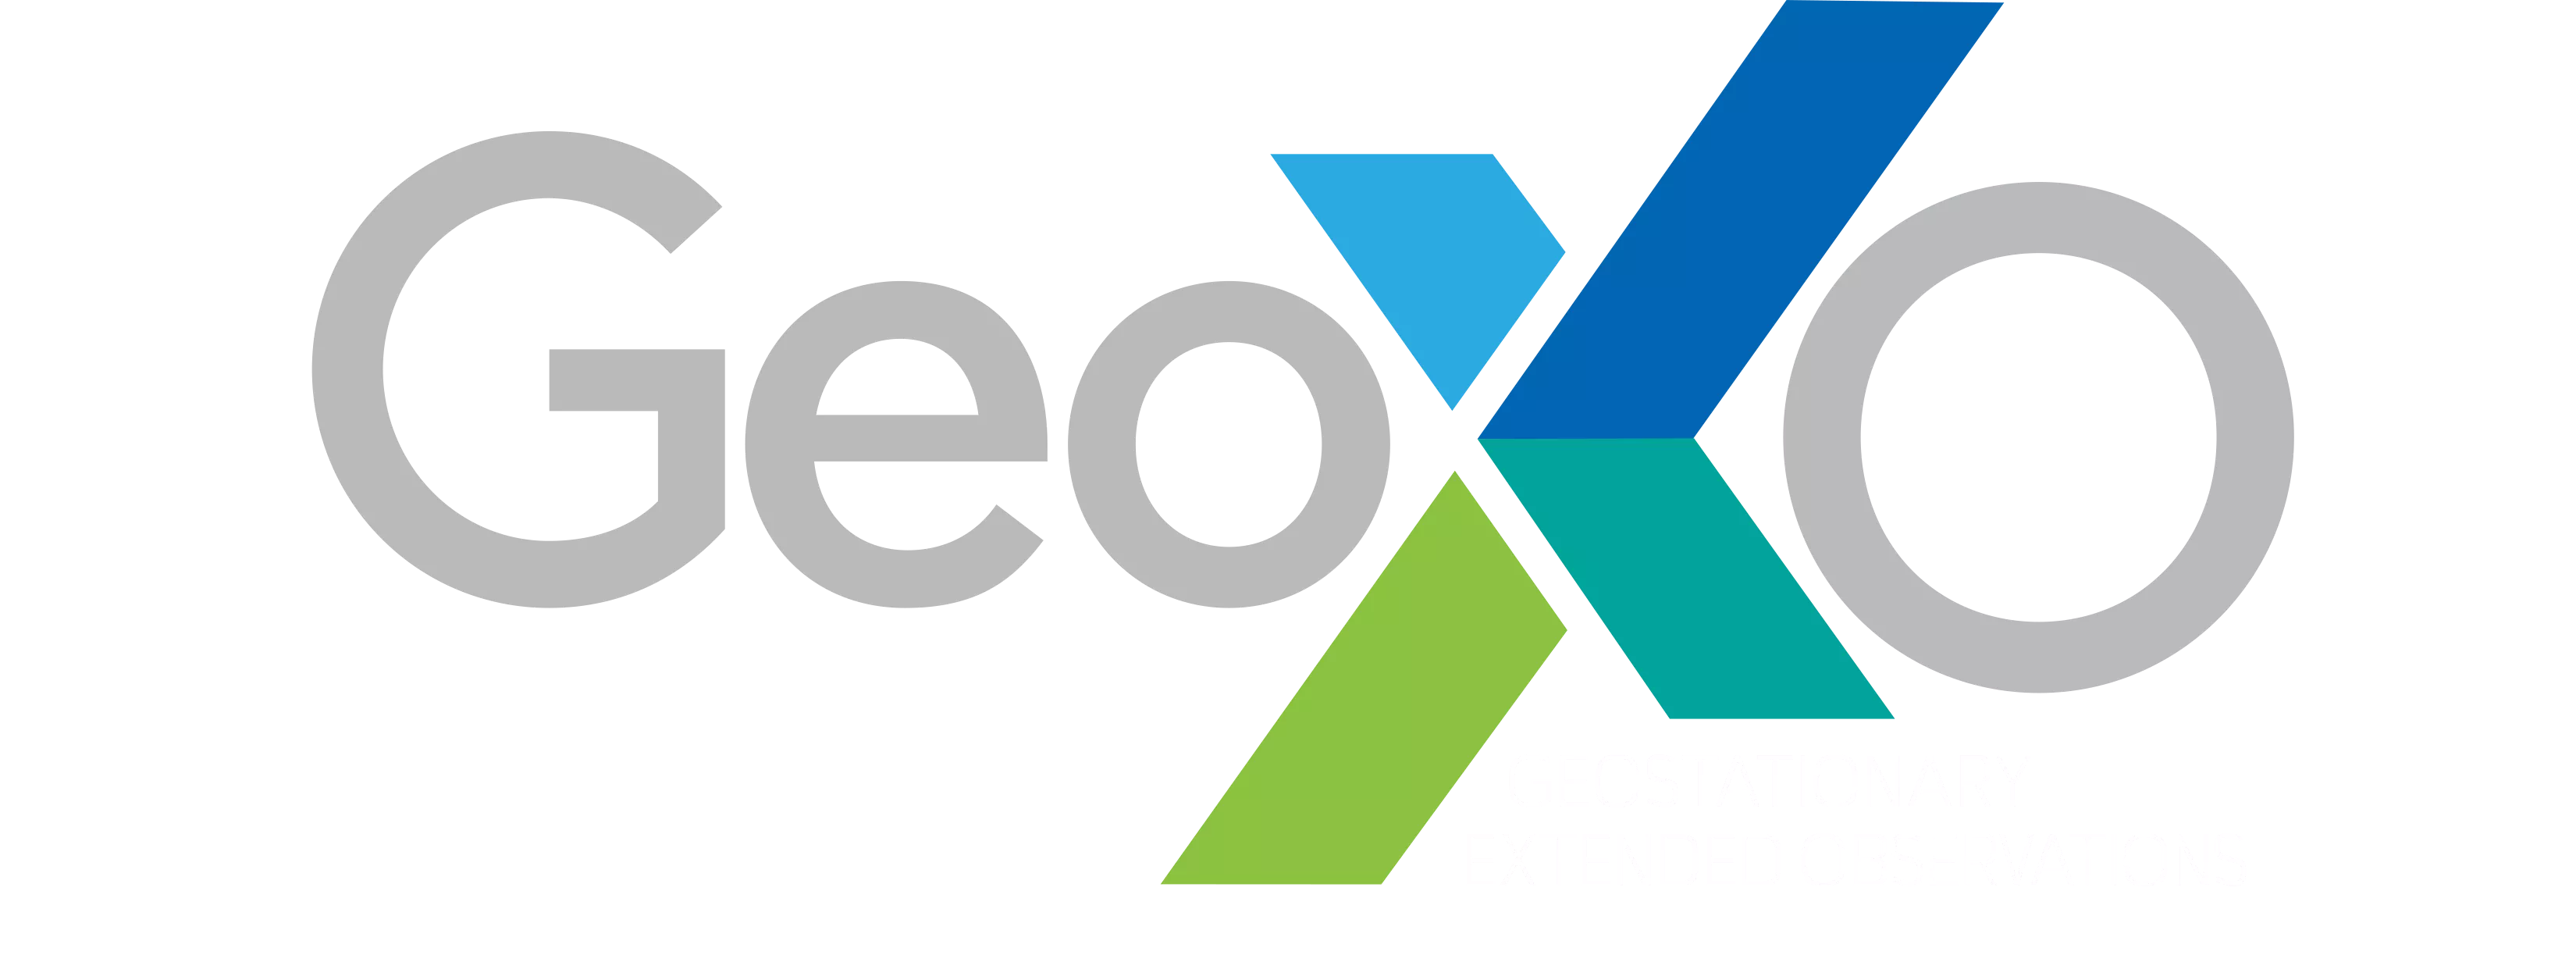 Image of the GeoXO Wordmark